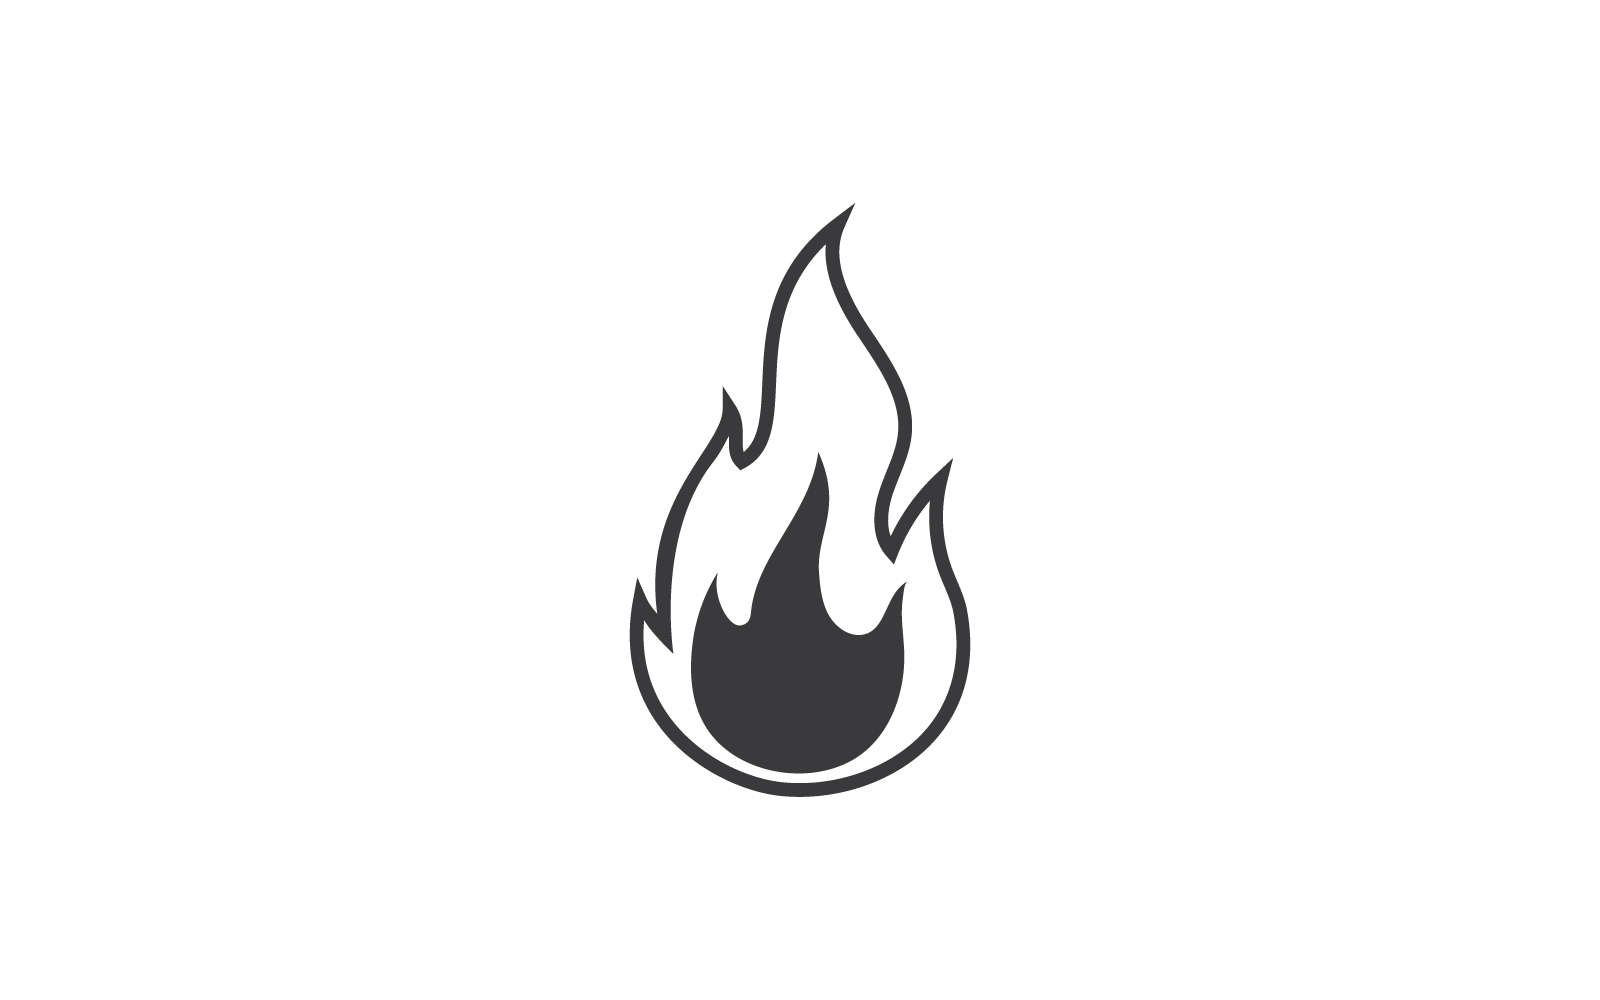 Fire flame Logo vector, Oil, gas and energy design vector Logo Template